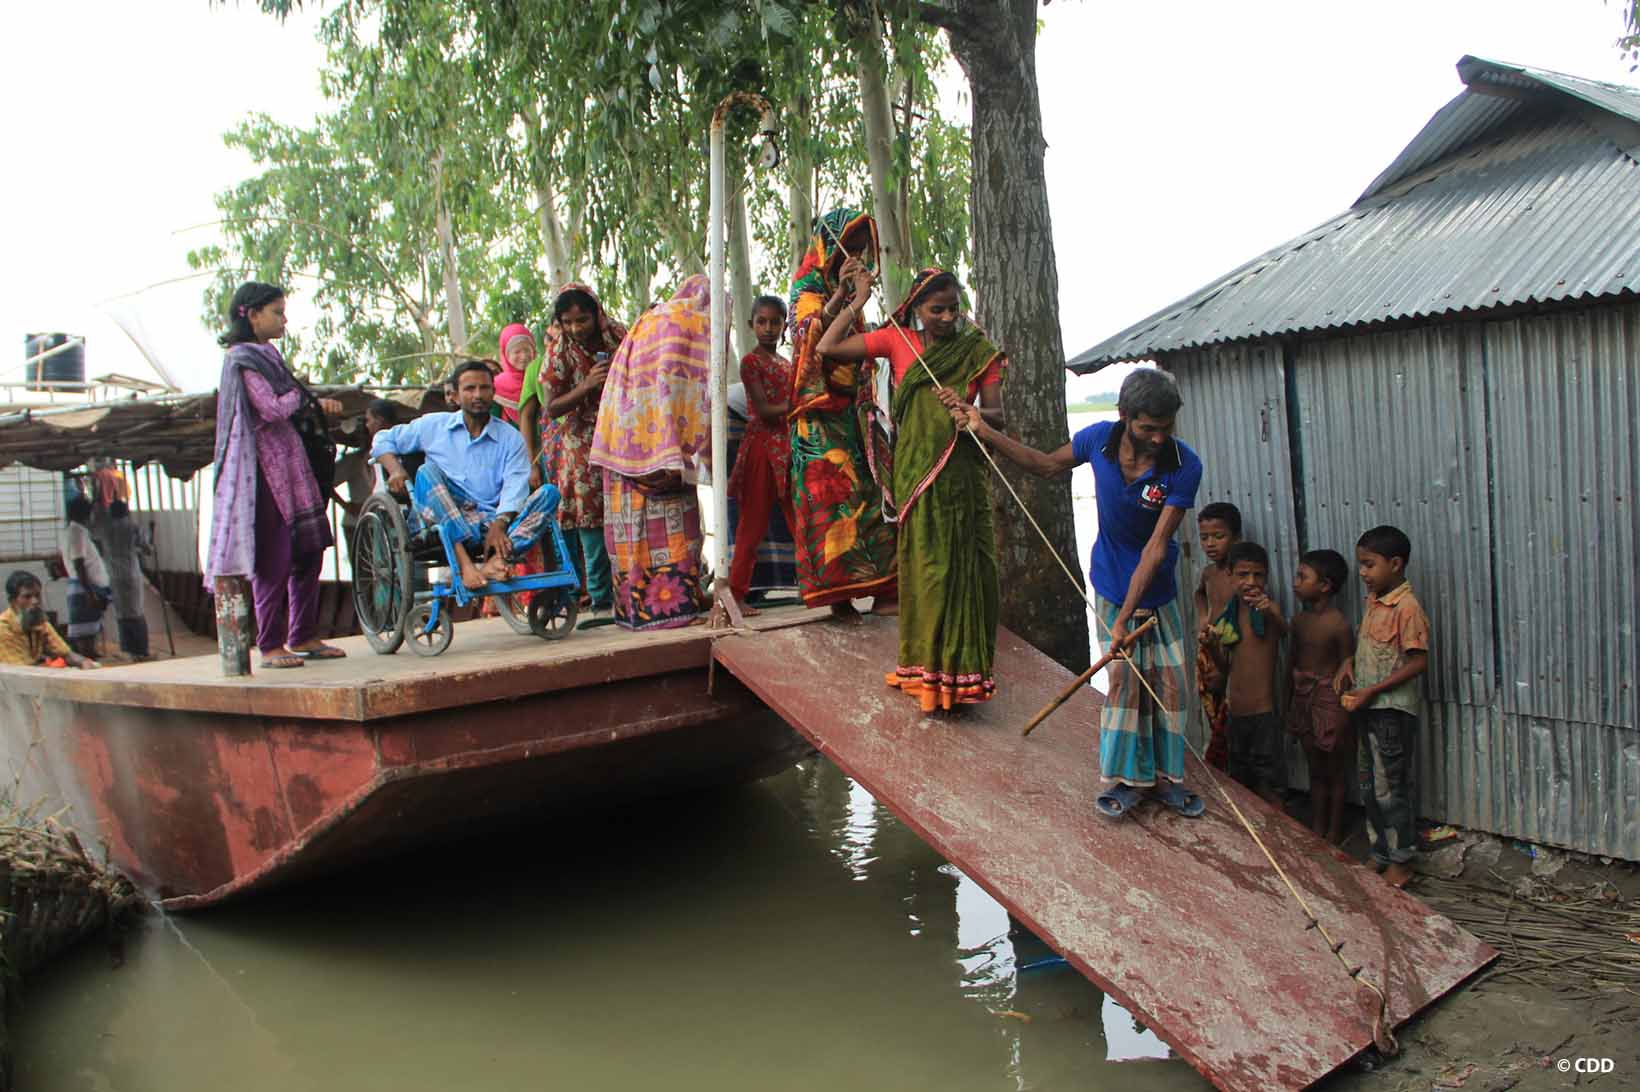 Persone in Bangladesh salgono su una barca di salvataggio senza barriere architettoniche.